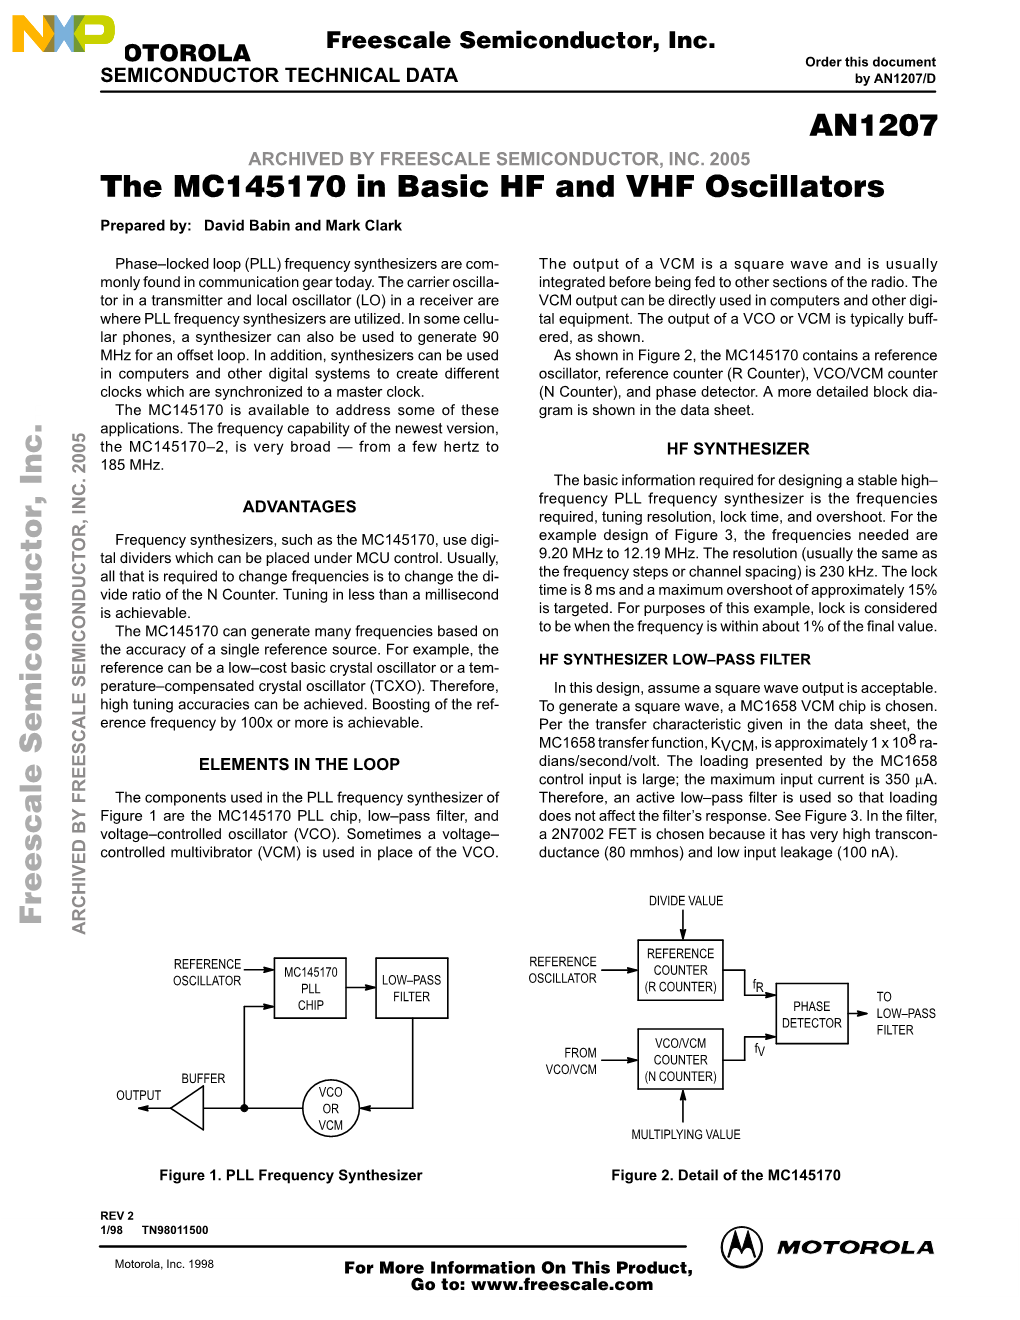 AN1207 MC145170 in Basic HF and VHF Oscillators